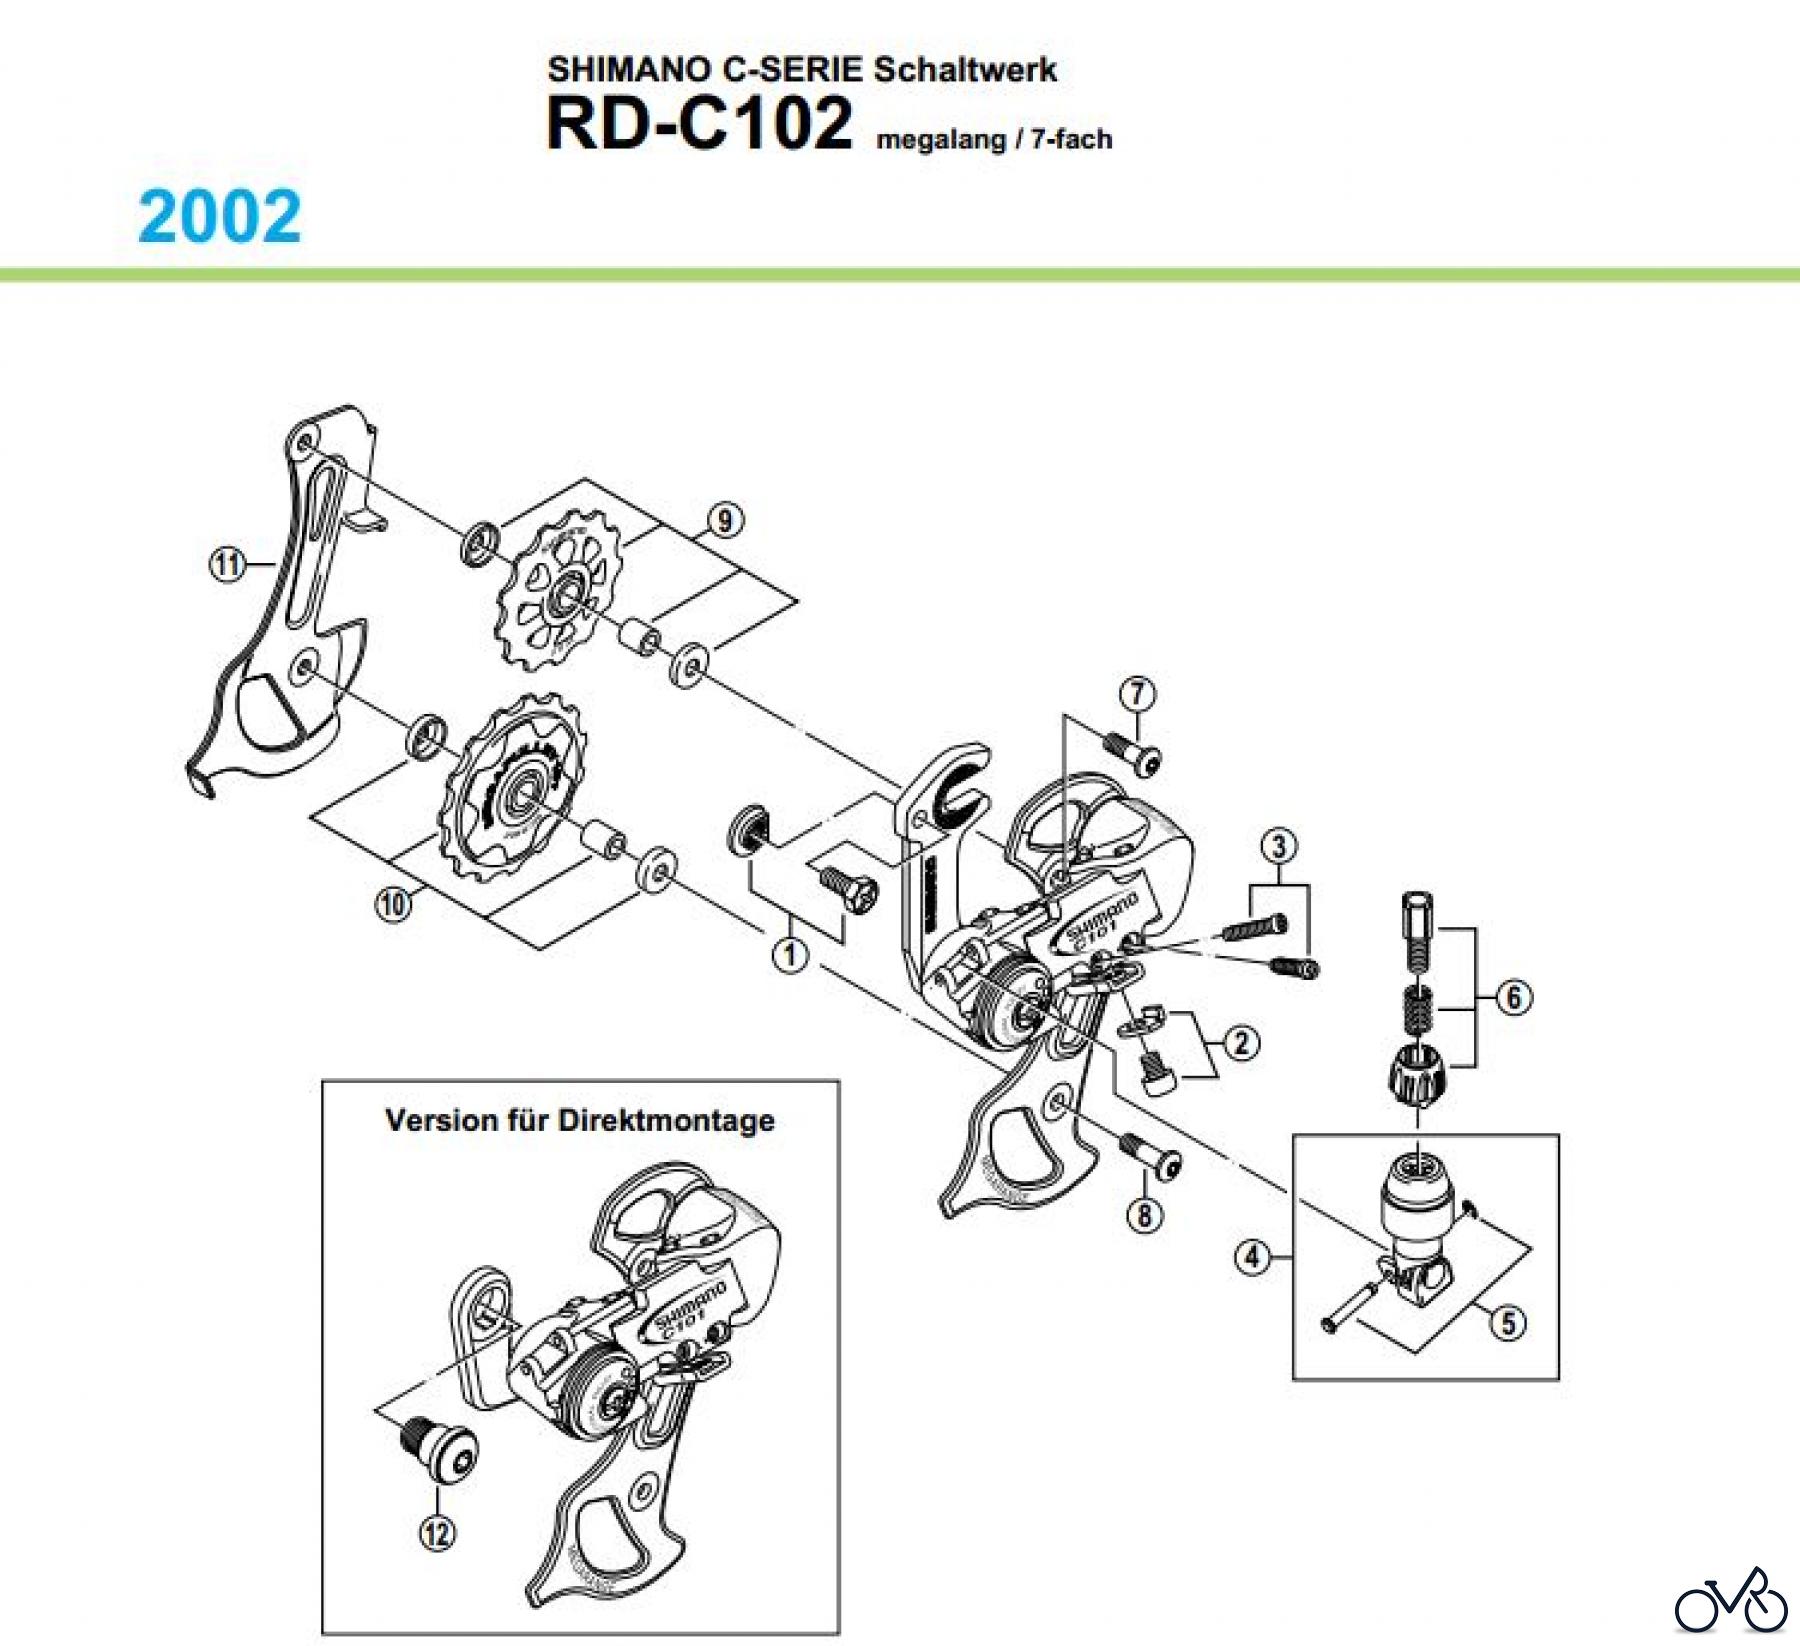  Shimano RD Rear Derailleur - Schaltwerk RD-C102-02